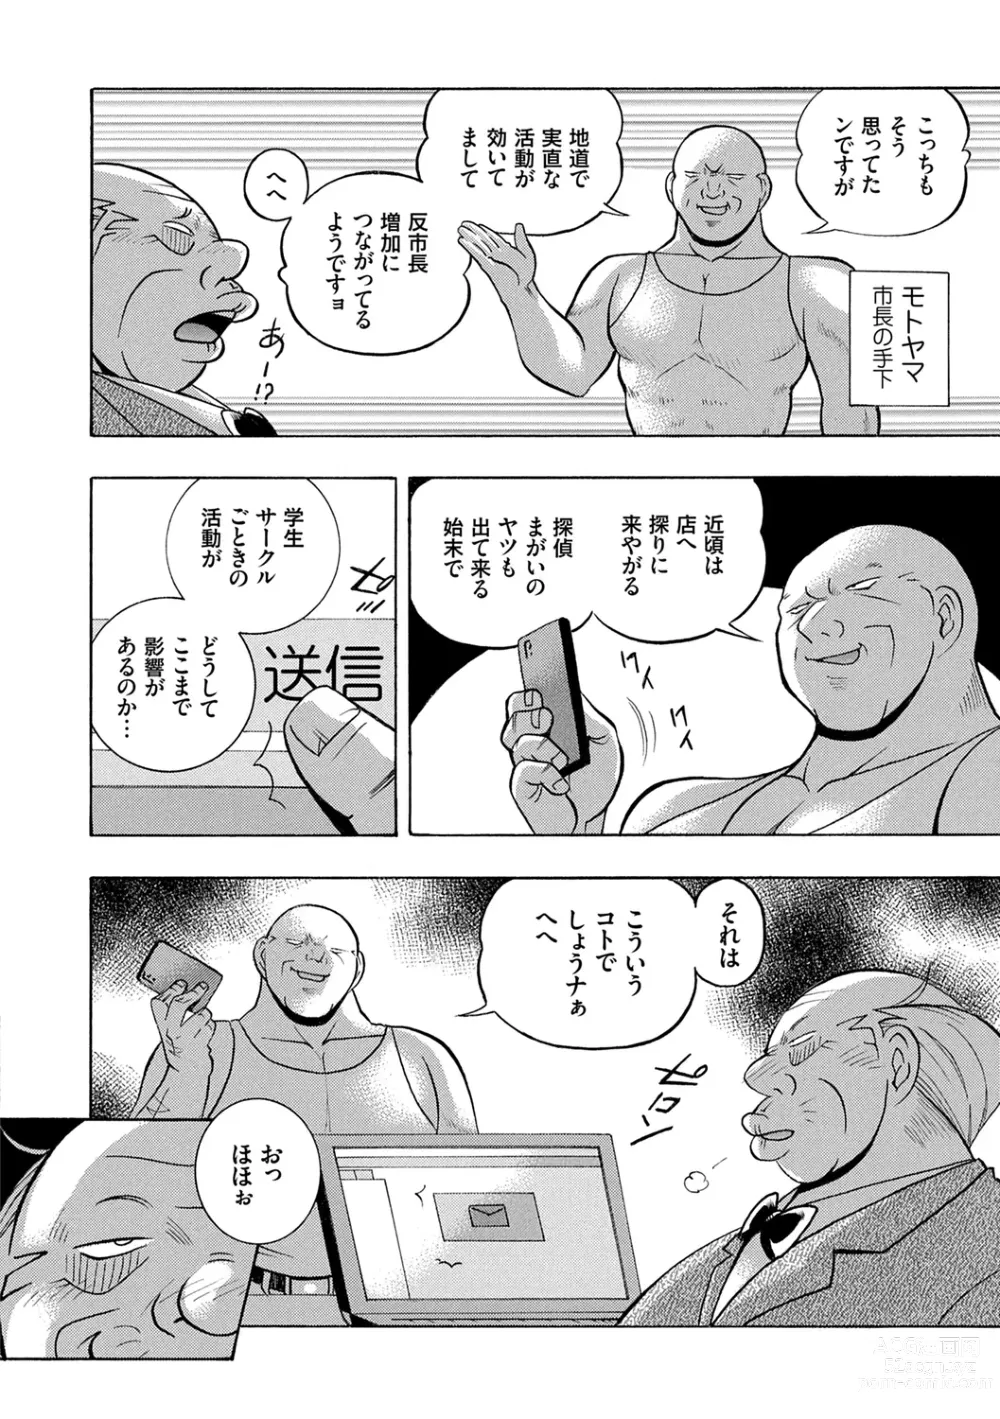 Page 8 of manga Joshidaisei Yuuka